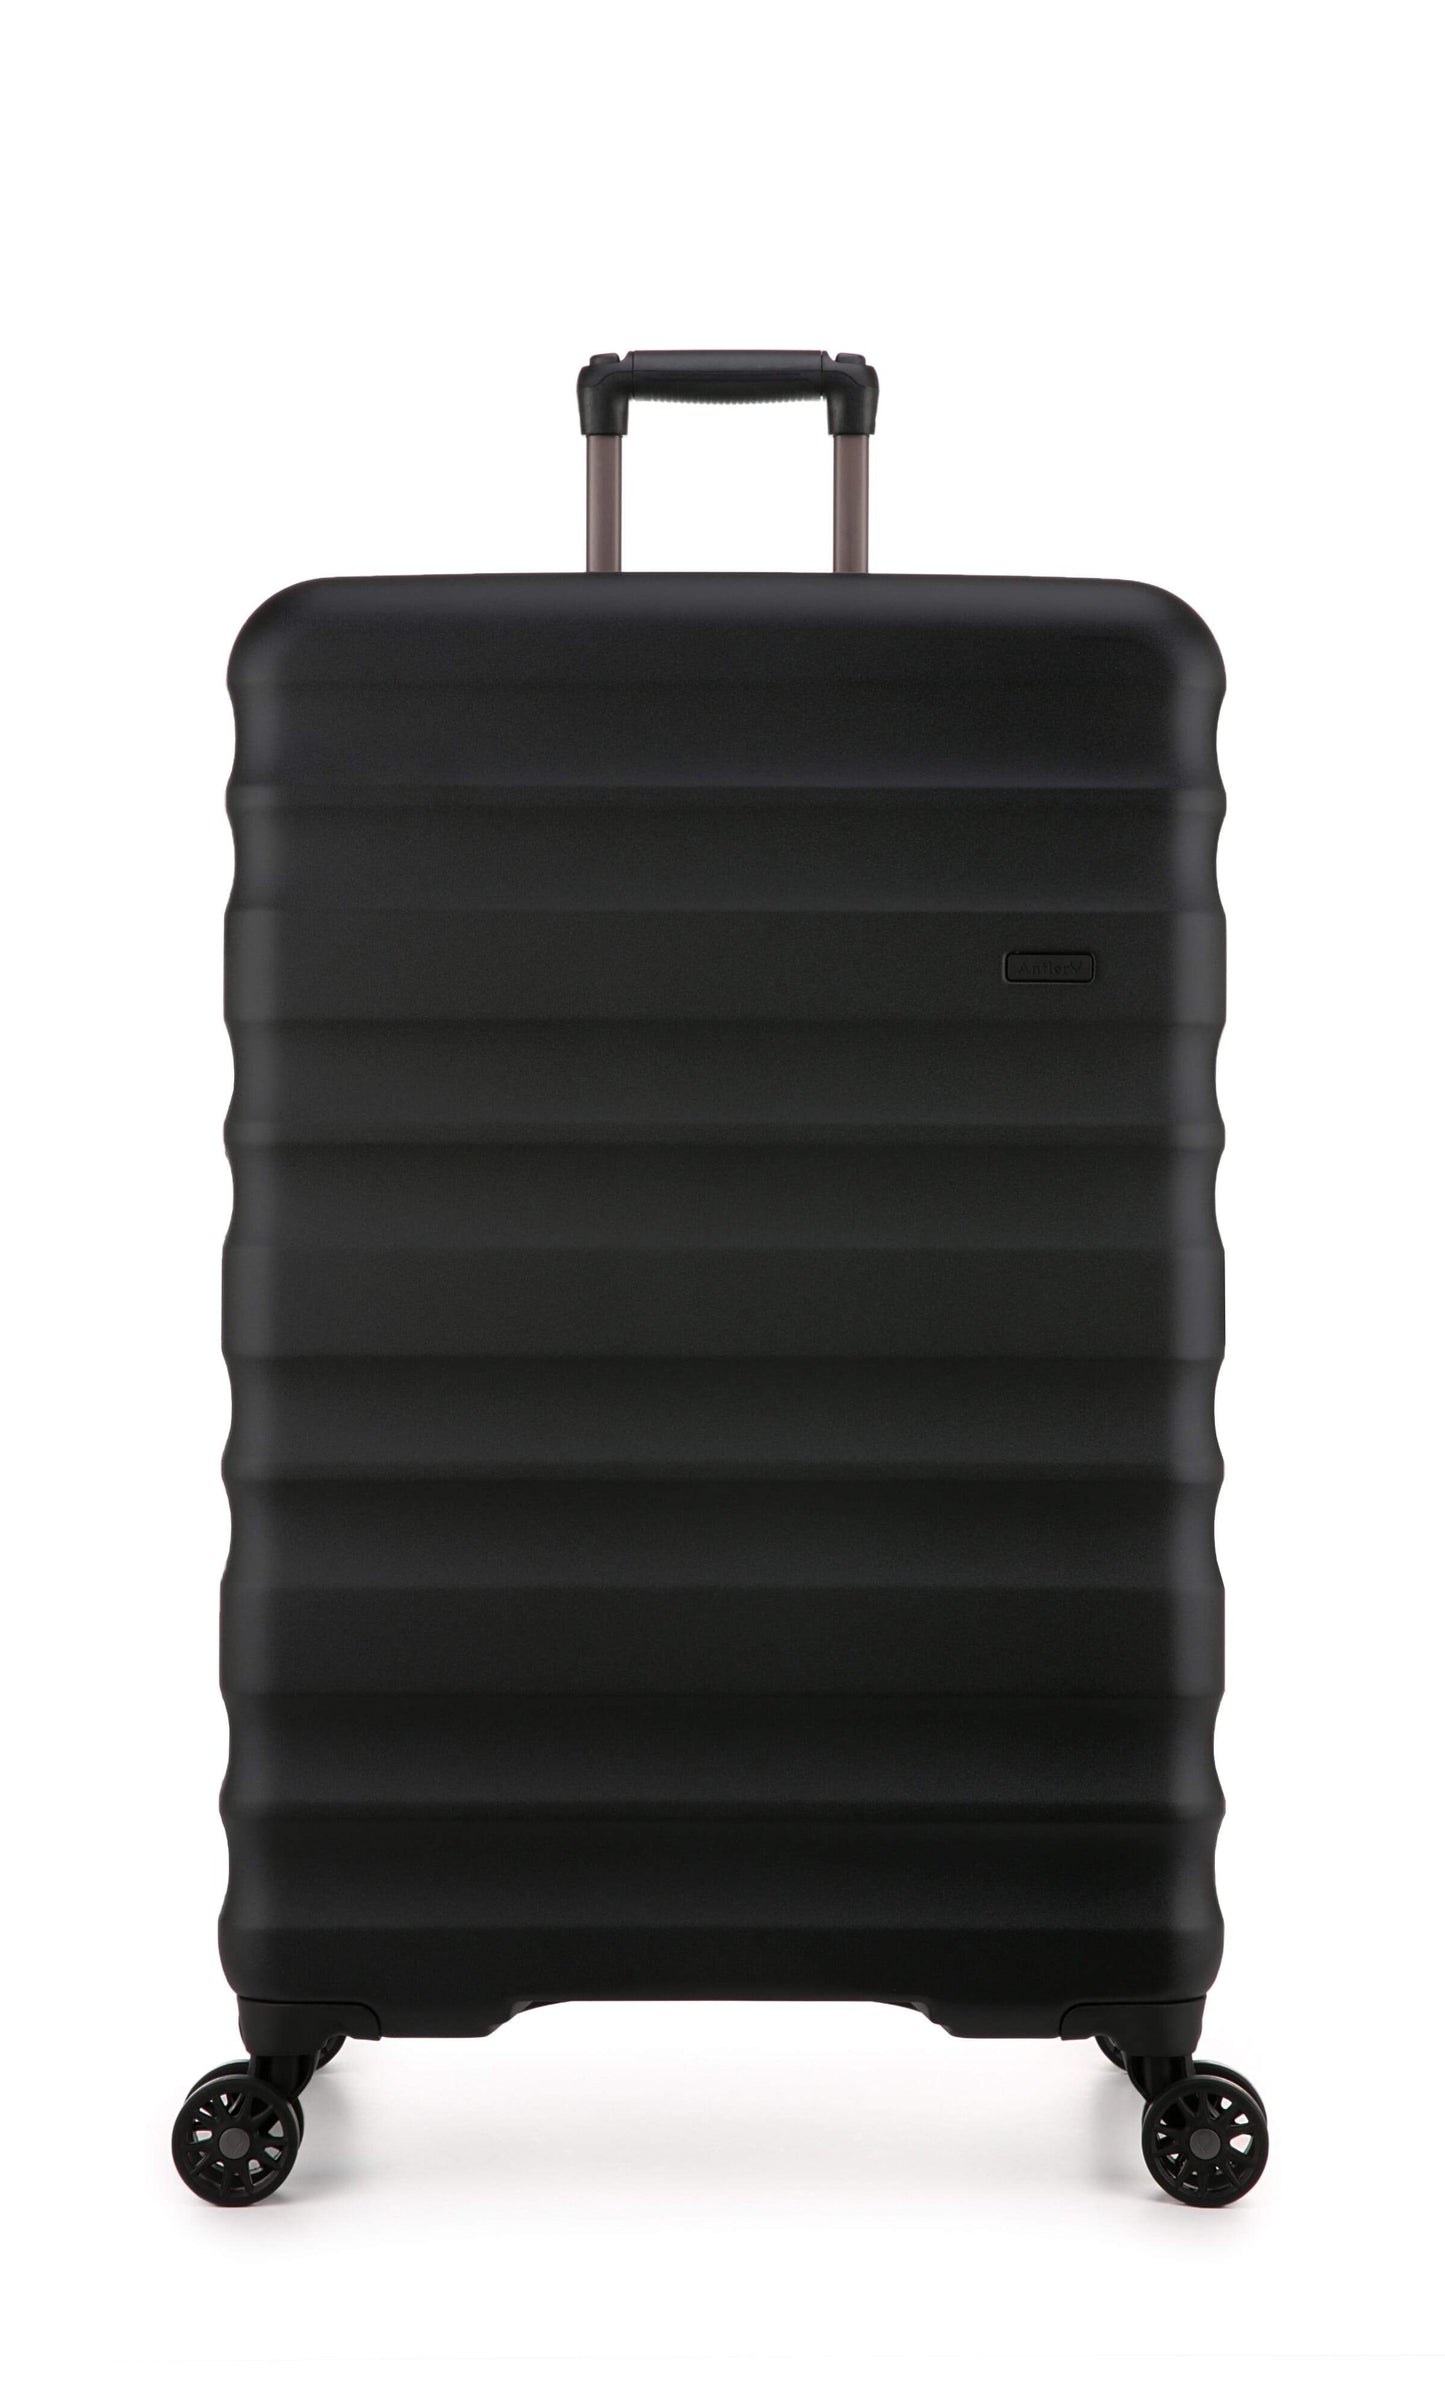 Antler Luggage -  Clifton set in black - Hard Suitcases Clifton Set of 3 Suitcases Black | Hard Suitcase | Antler UK